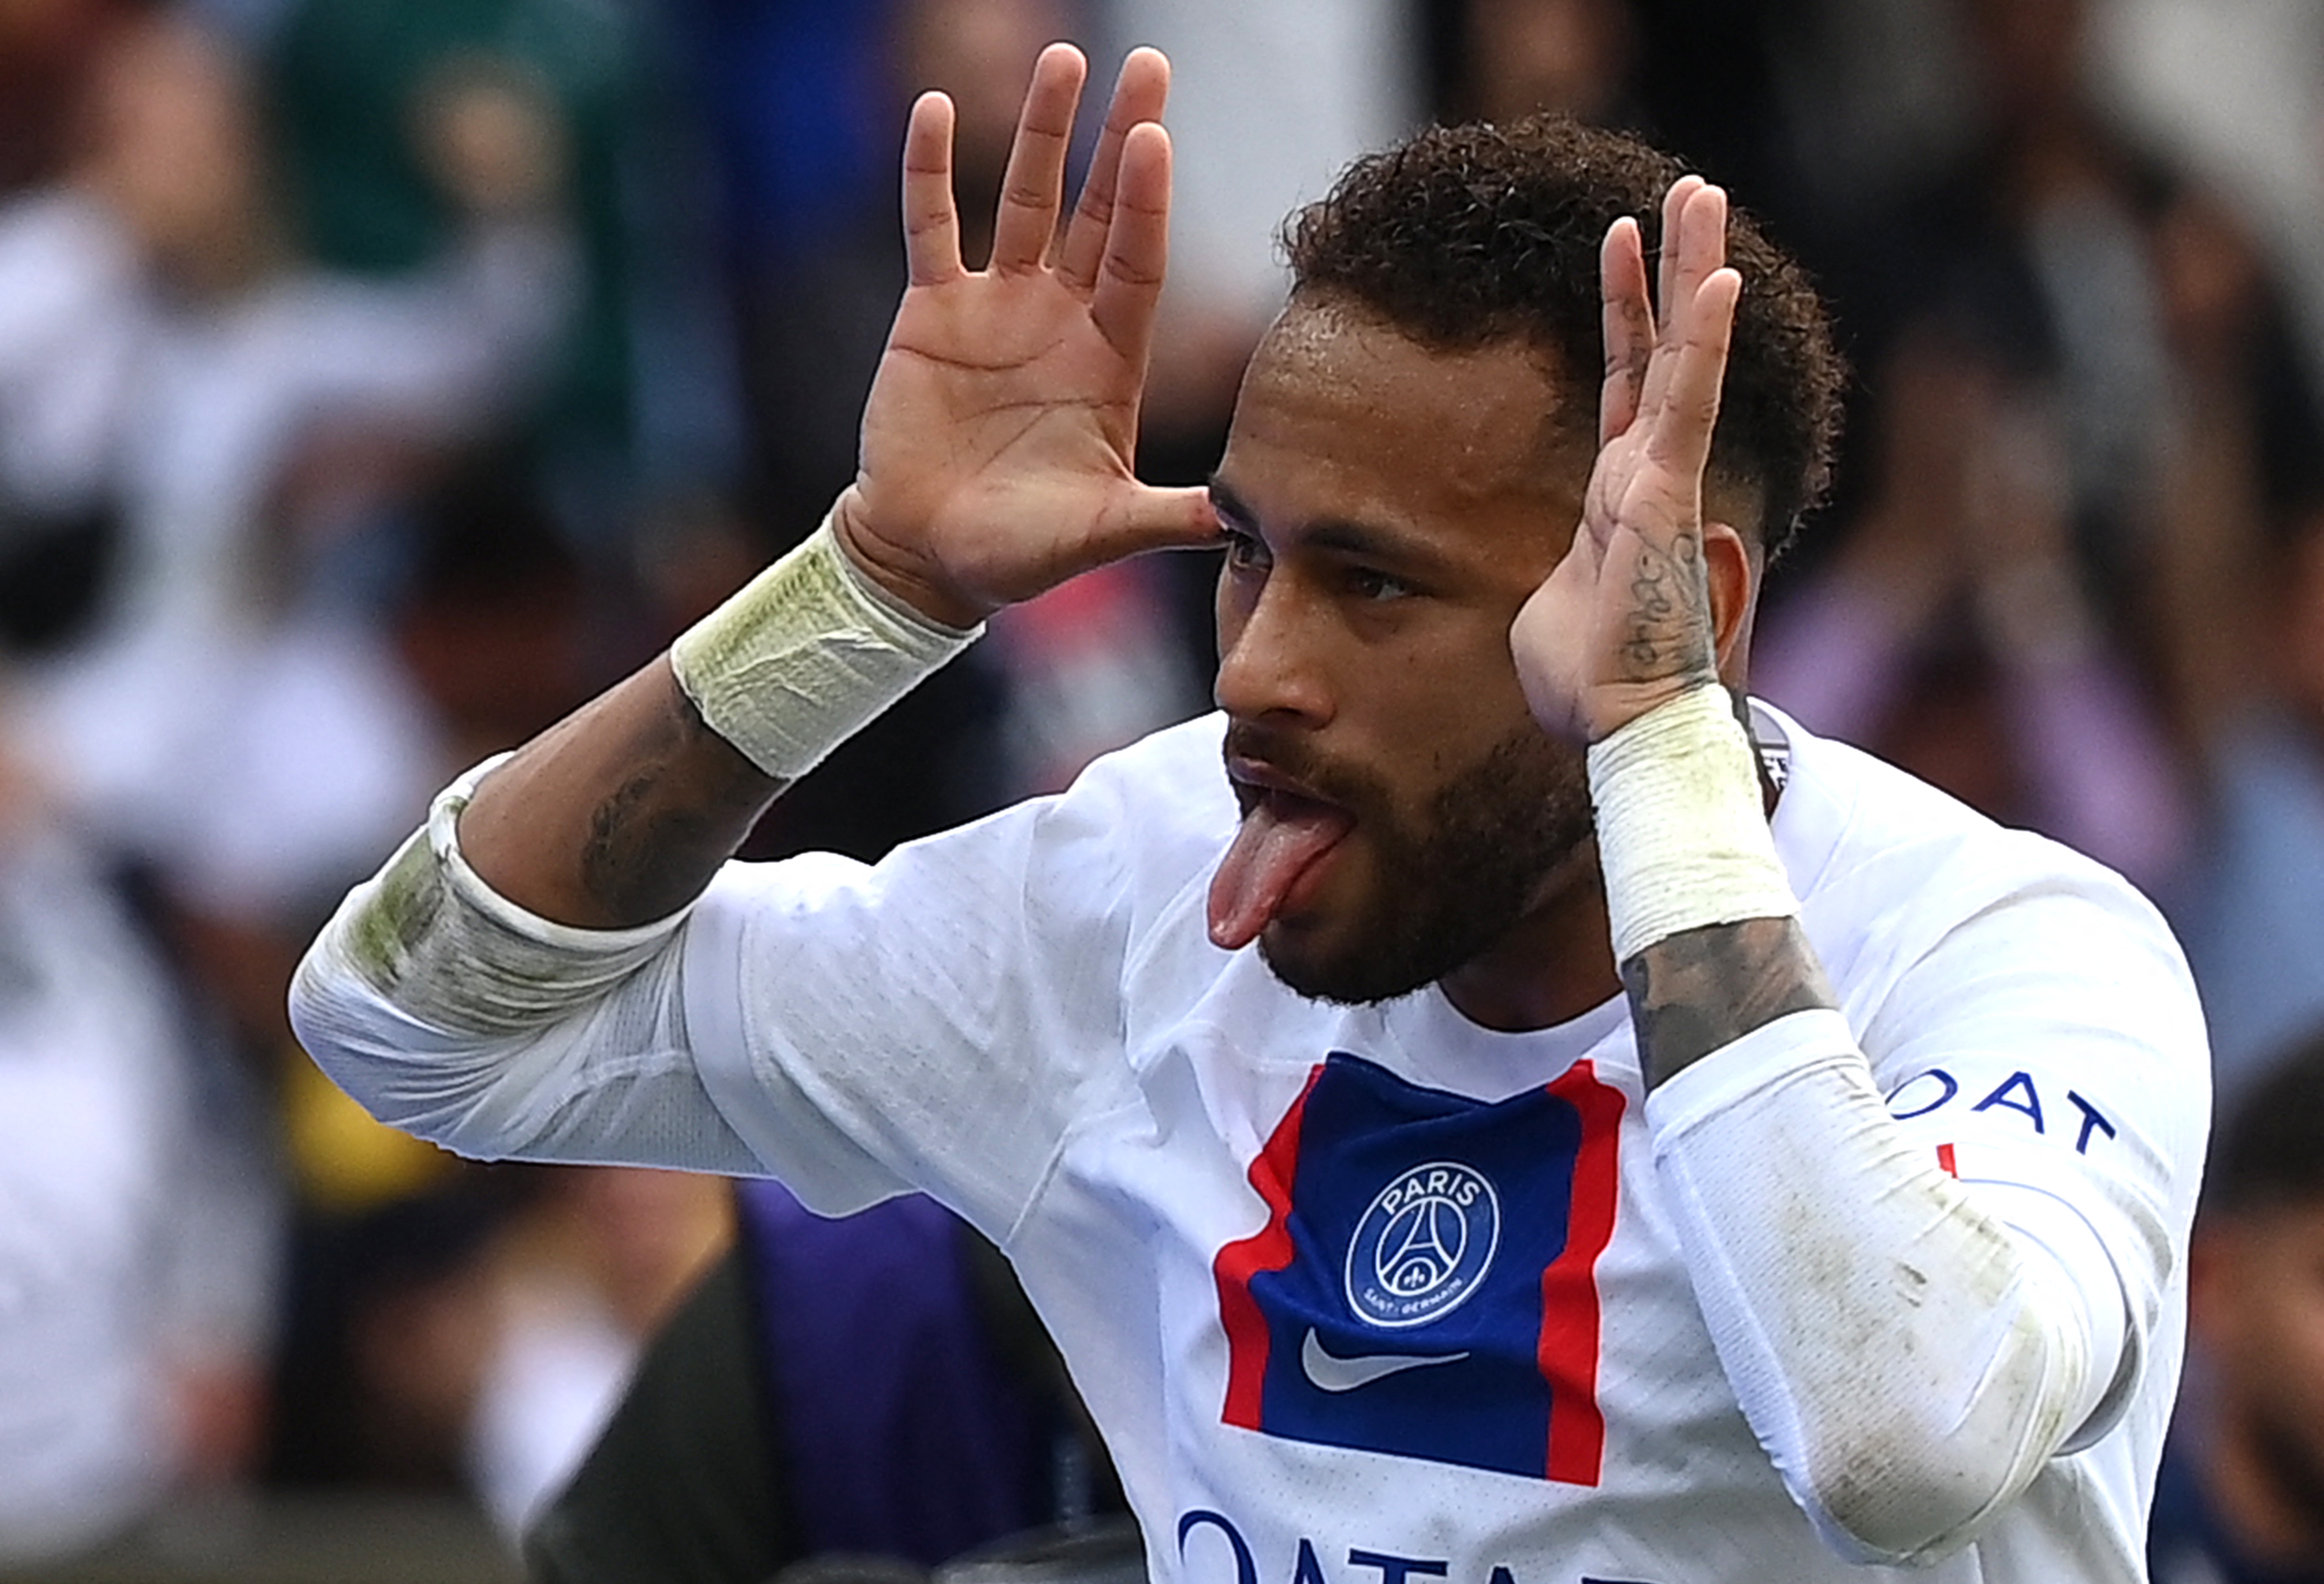 Neymar volta a jogar e em alto estilo, marcando gols pelo PSG; confira